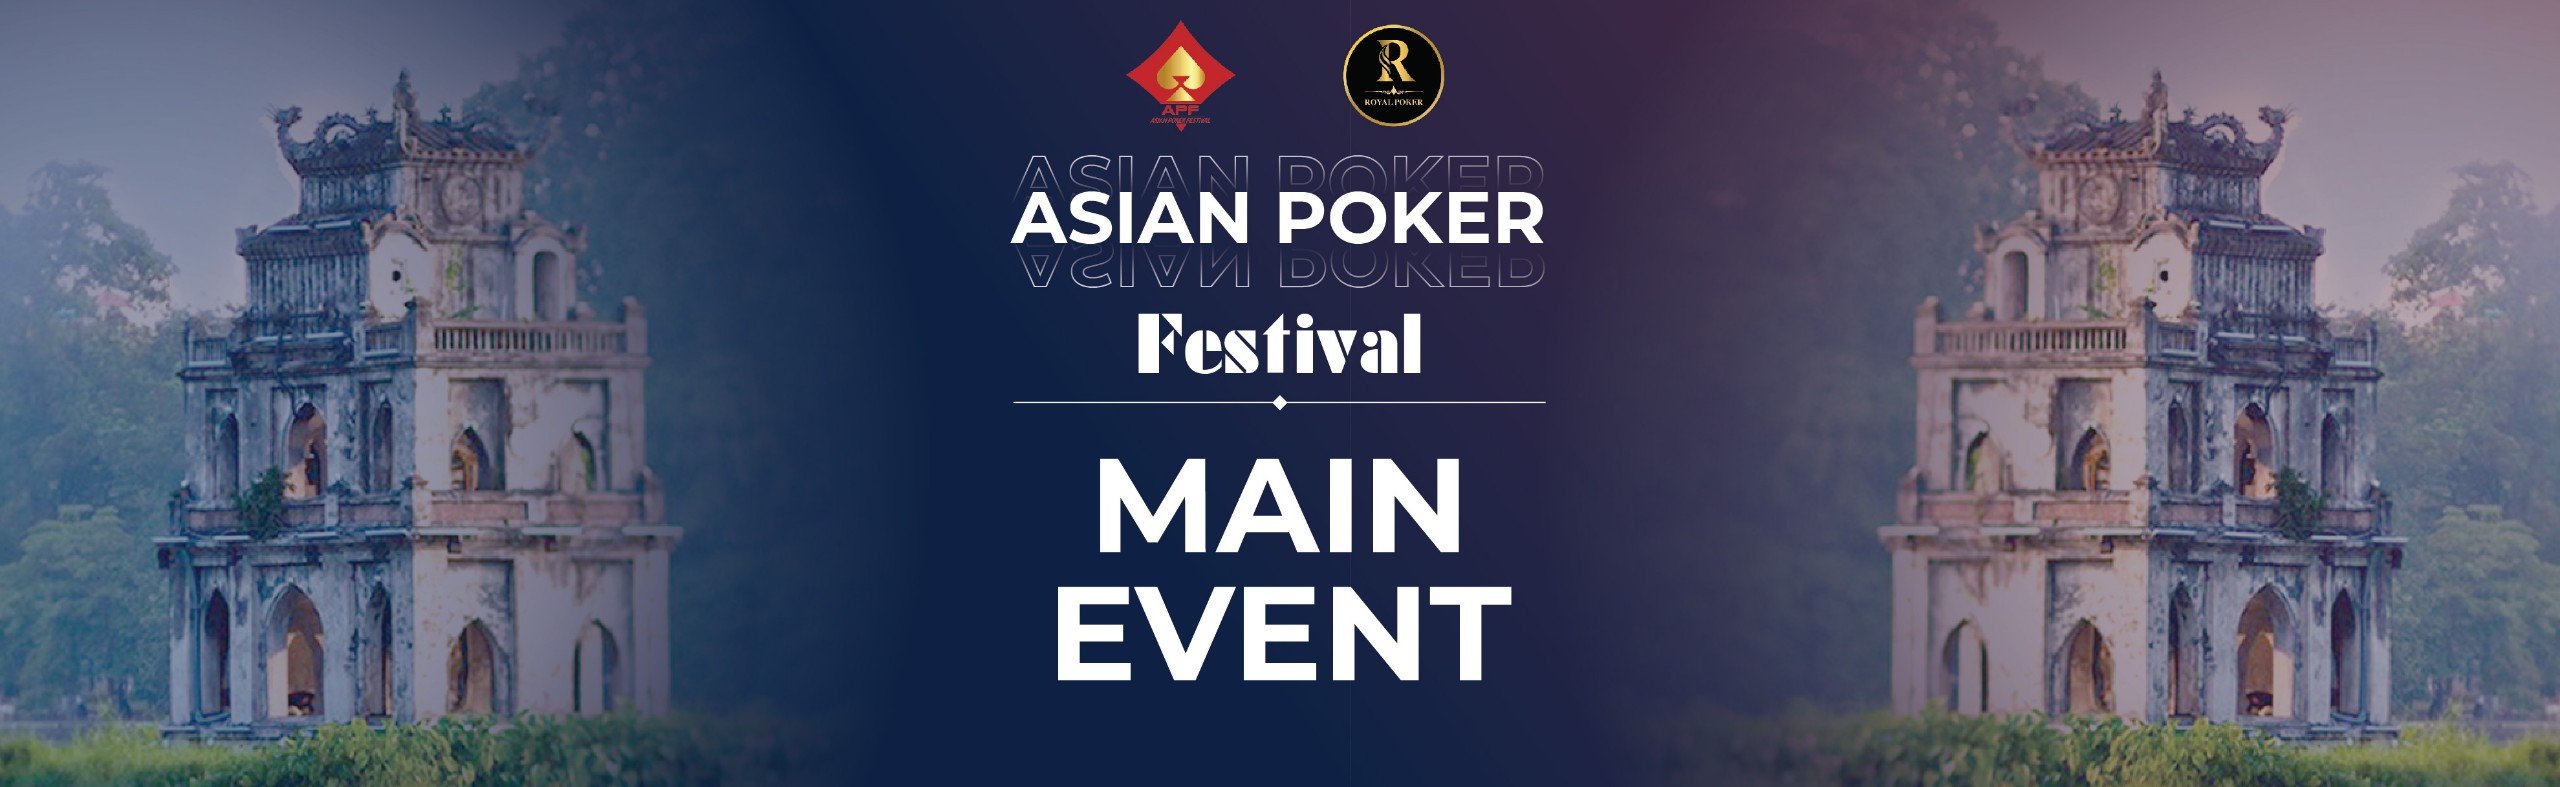 asian-poker-festival-main-event.jpg